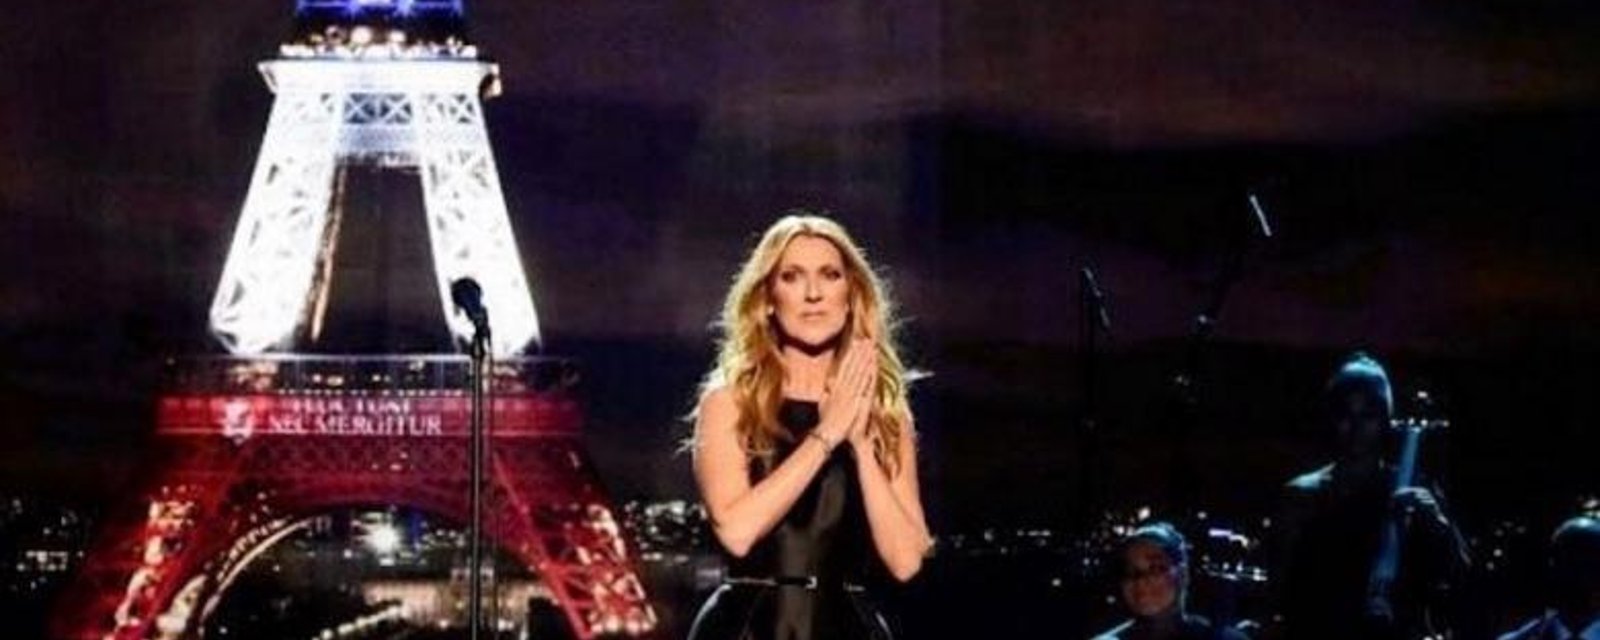 Le bouleversant message de Céline Dion pour les victimes de Nice